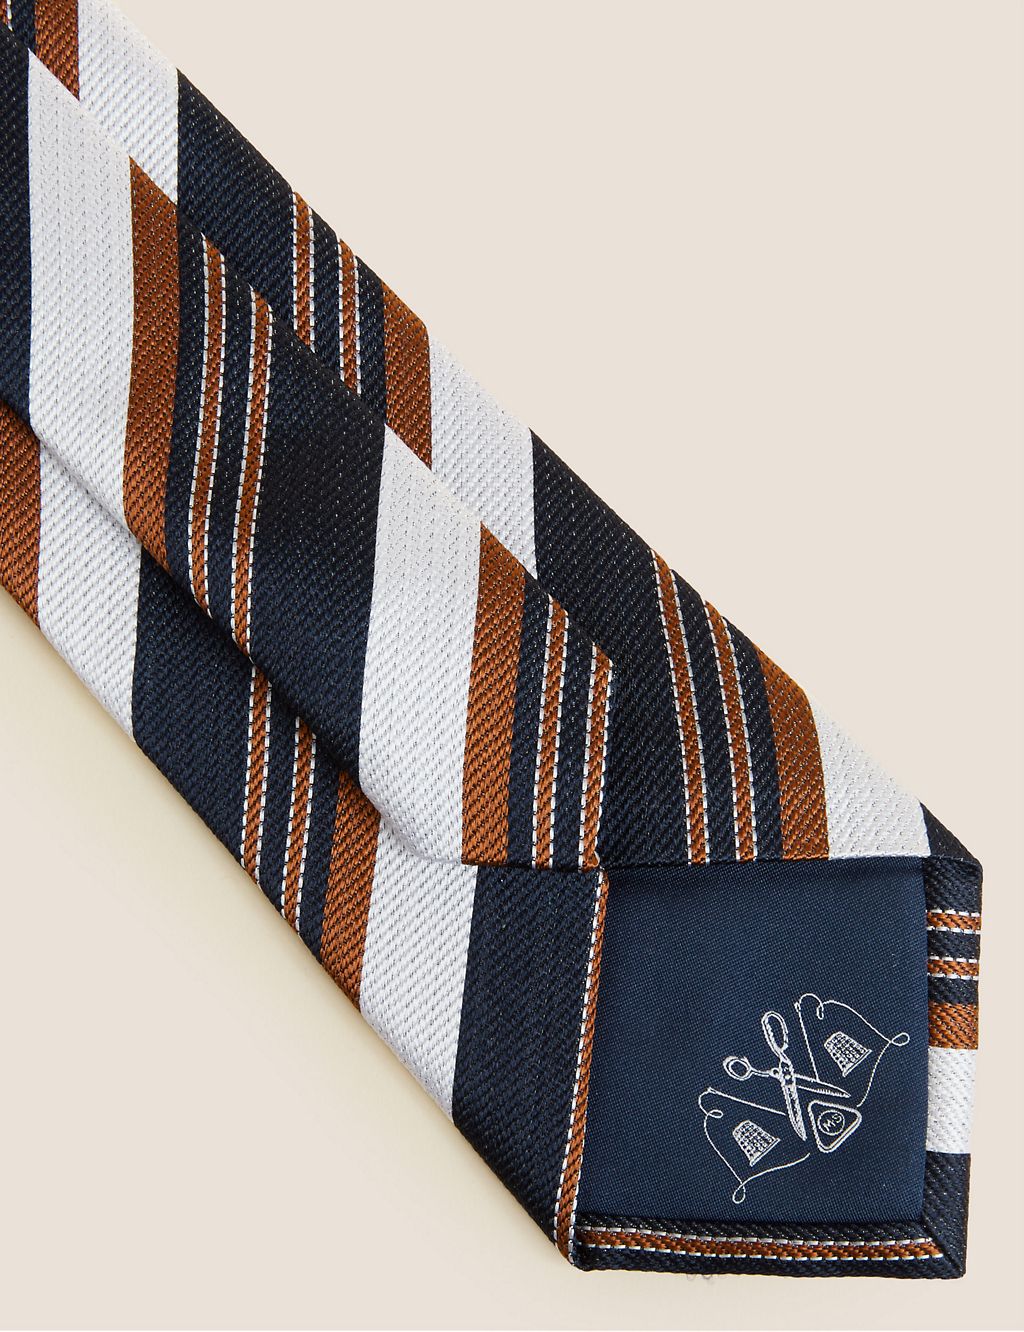 Striped Pure Silk Tie 2 of 2